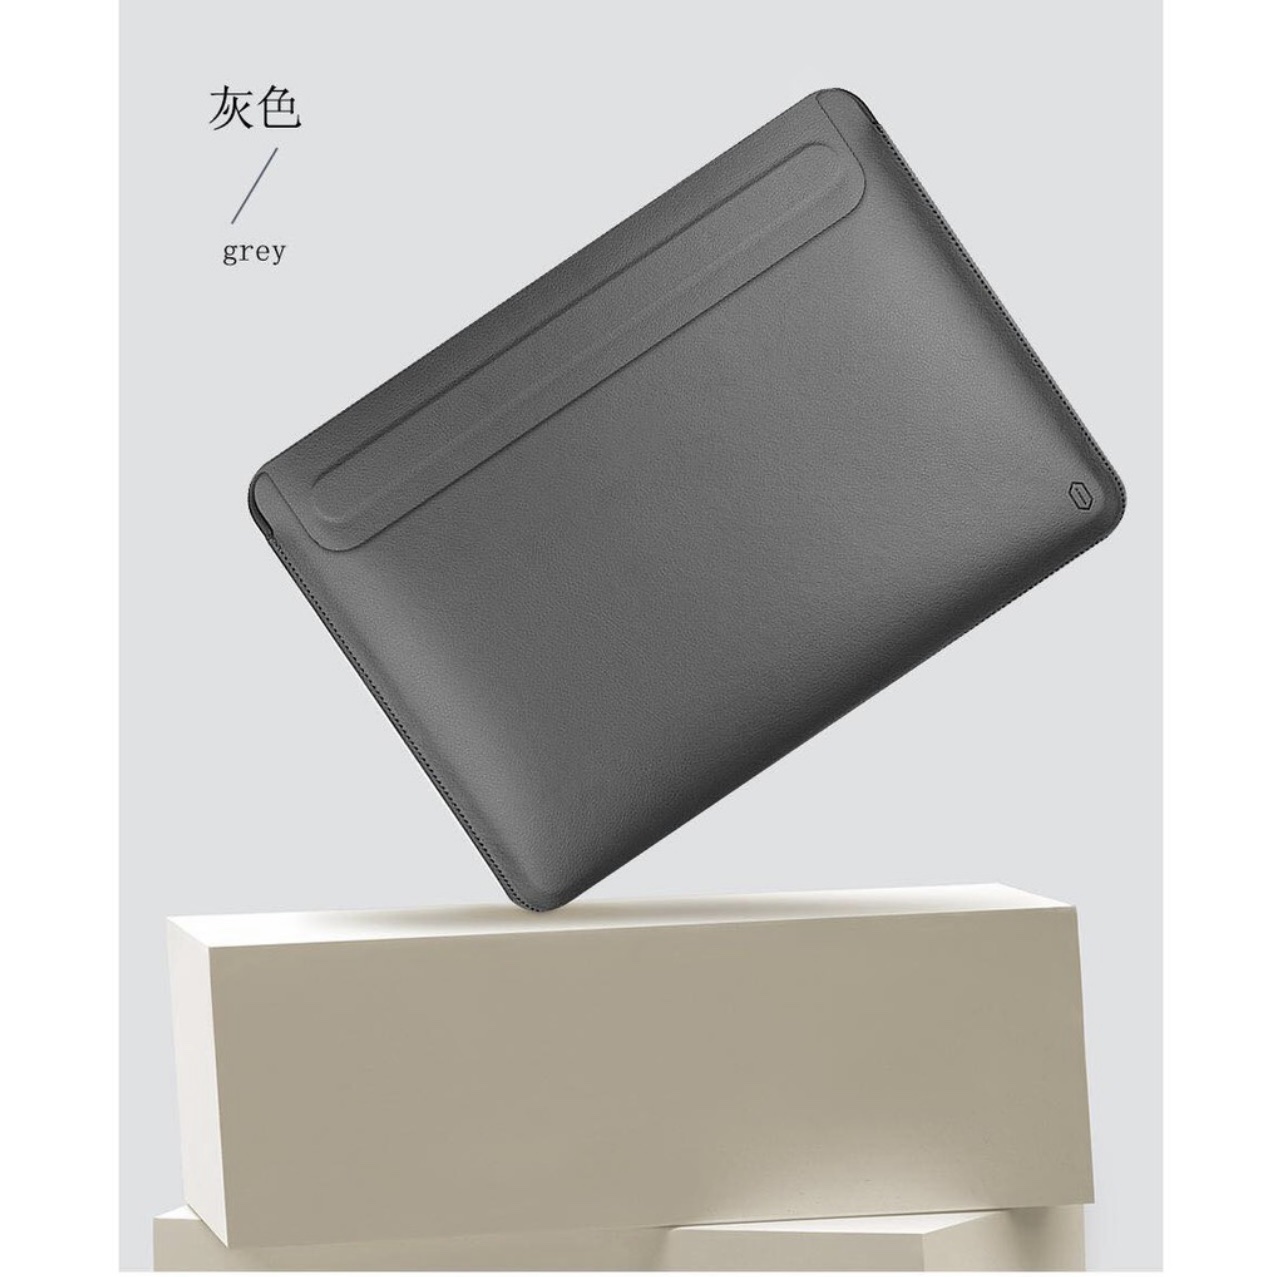 Bao Da Wiwu Skin Pro II Dành Cho Macbook, Laptop Thiết Kế Siêu Mỏng, Có Nắp Đóng Từ Tính An Toàn - Hàng Chính Hãng